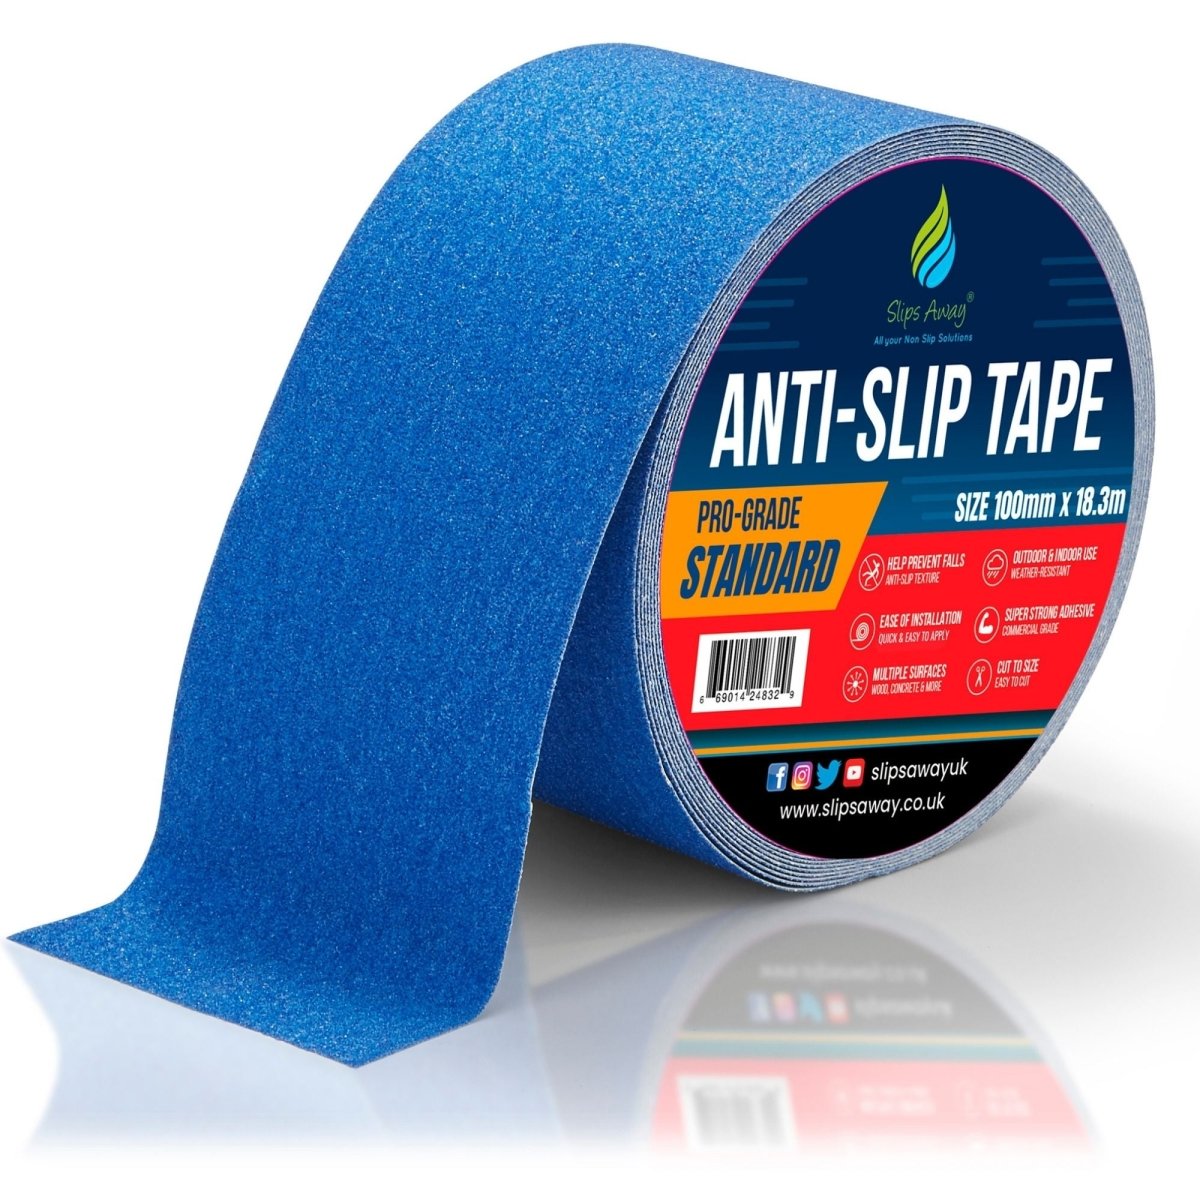 Blue Anti Slip Tape Rolls Standard Grade - Slips Away - Non slip tape - 100mm x 18.3m